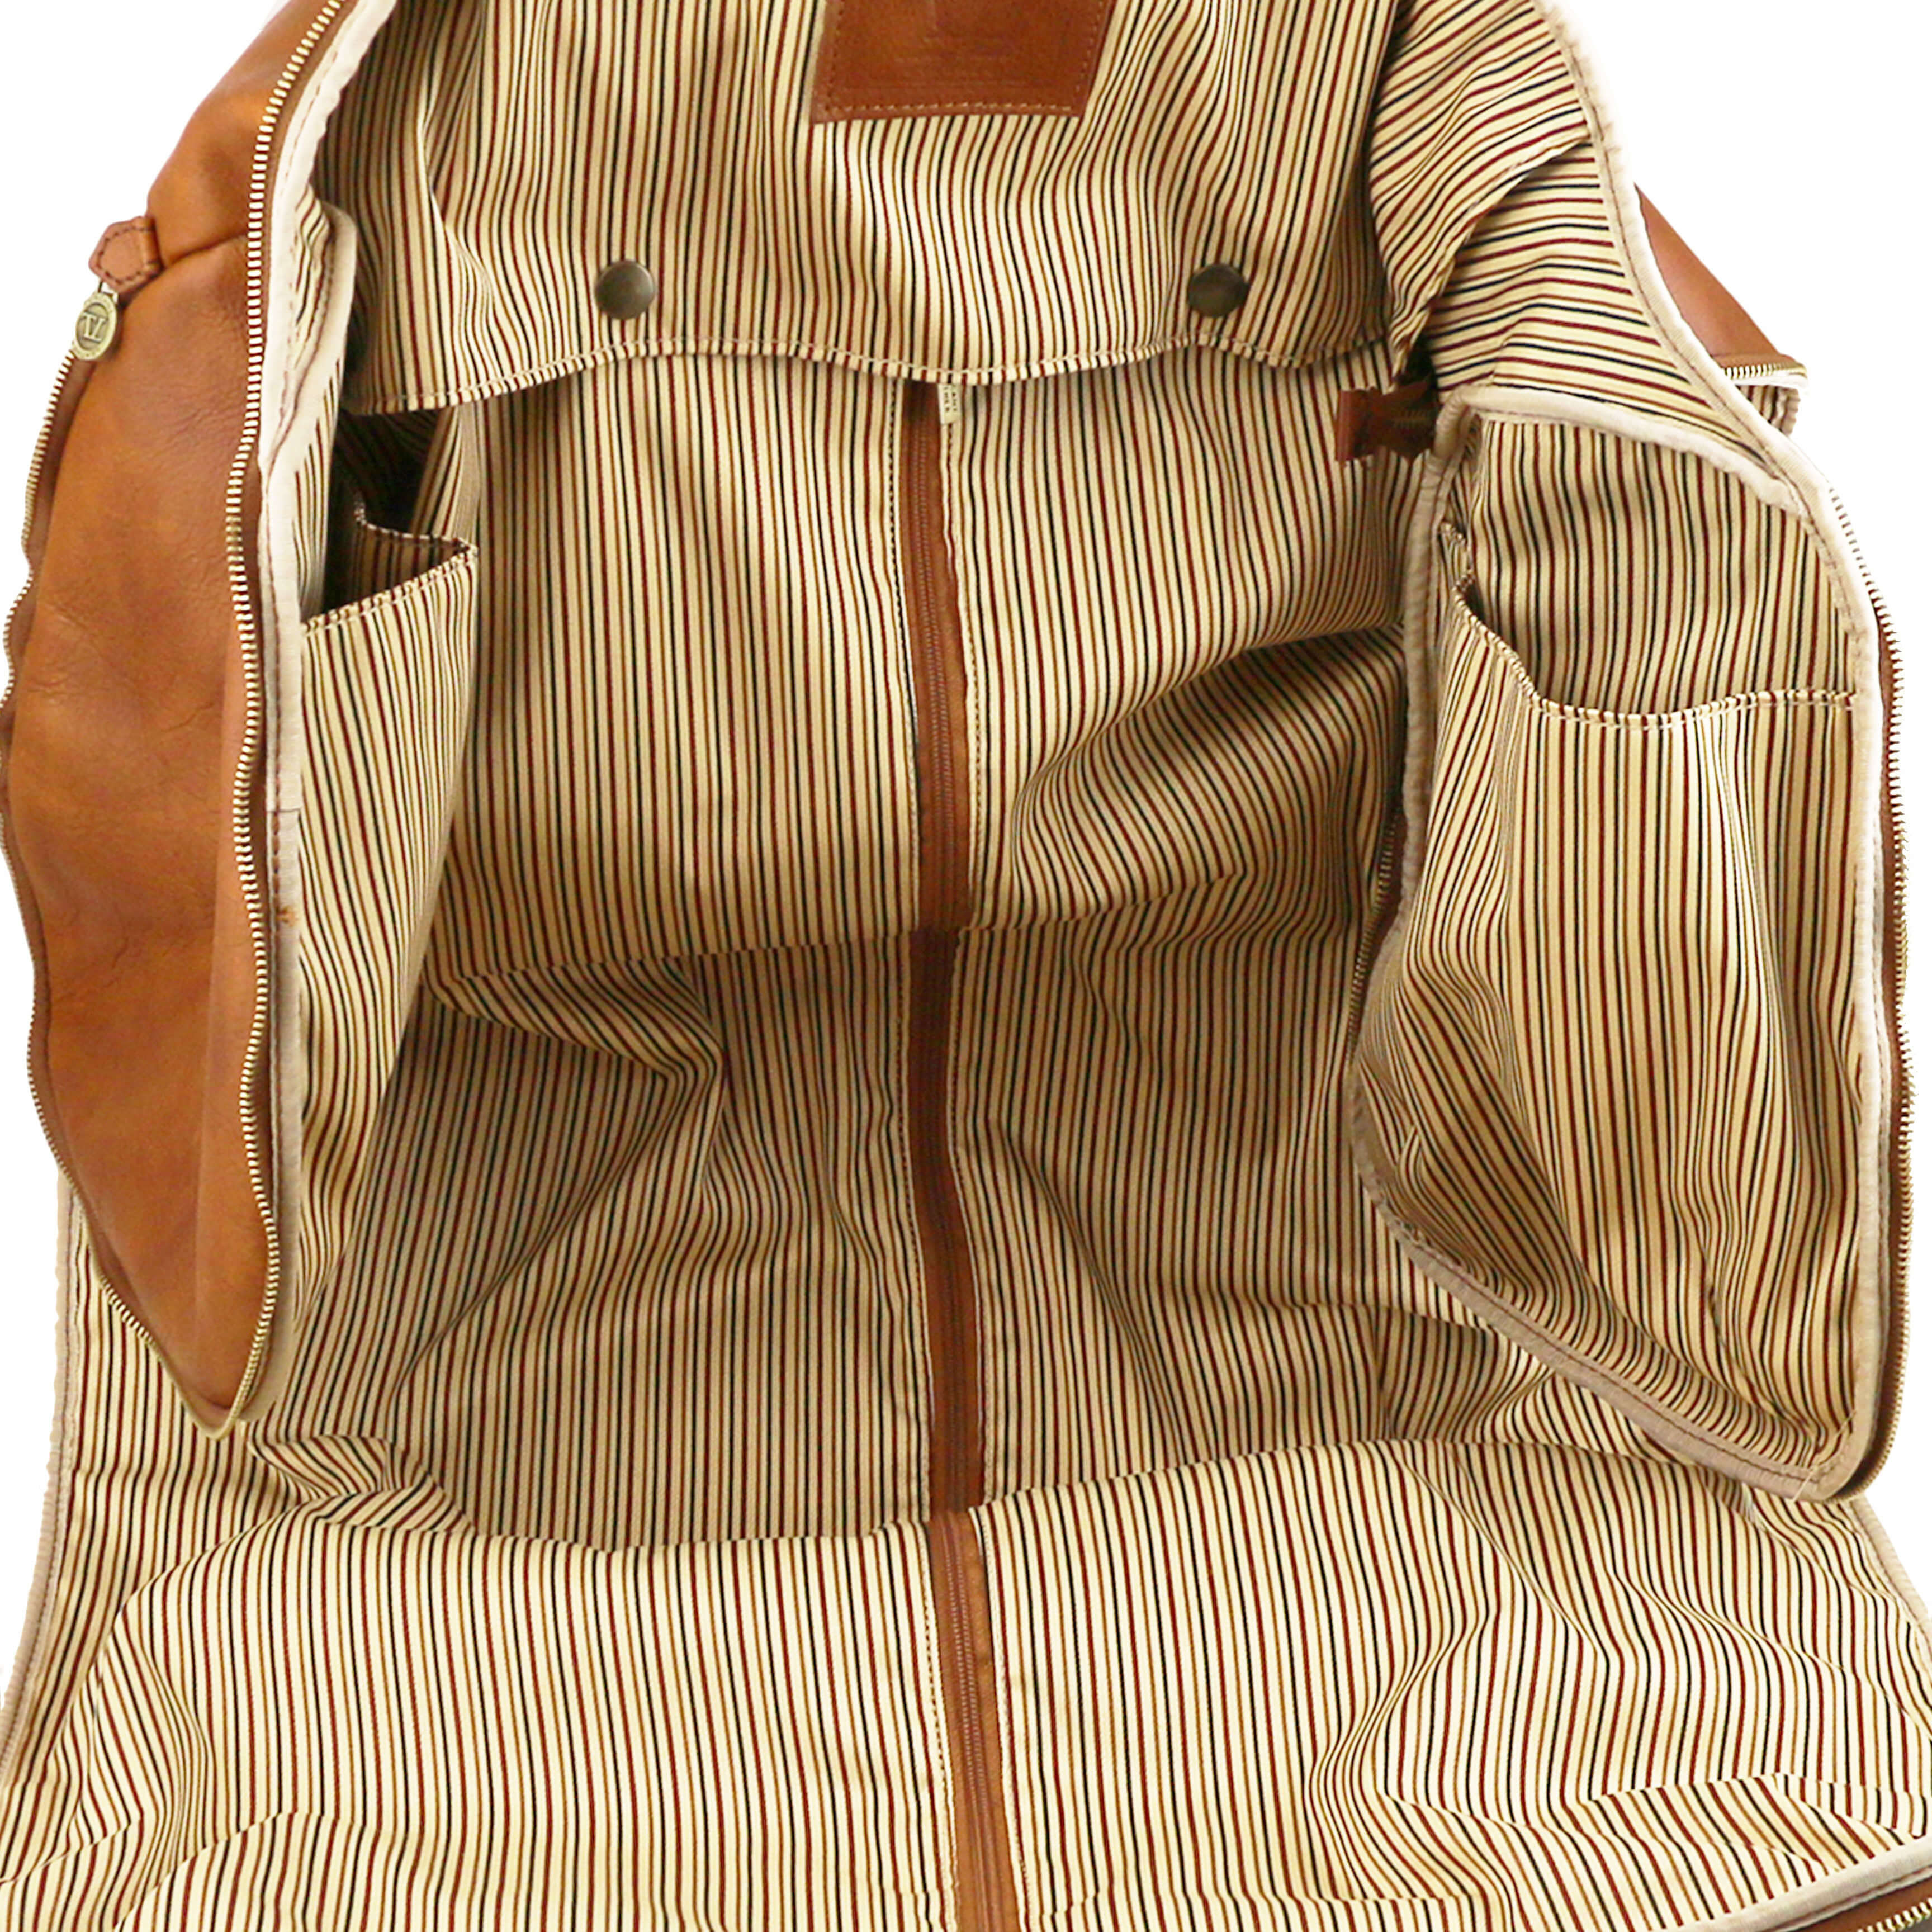 Tuscany Leather leren reistas / kledingtas Antigua voor dames en heren tl142341 cognac binnenkant